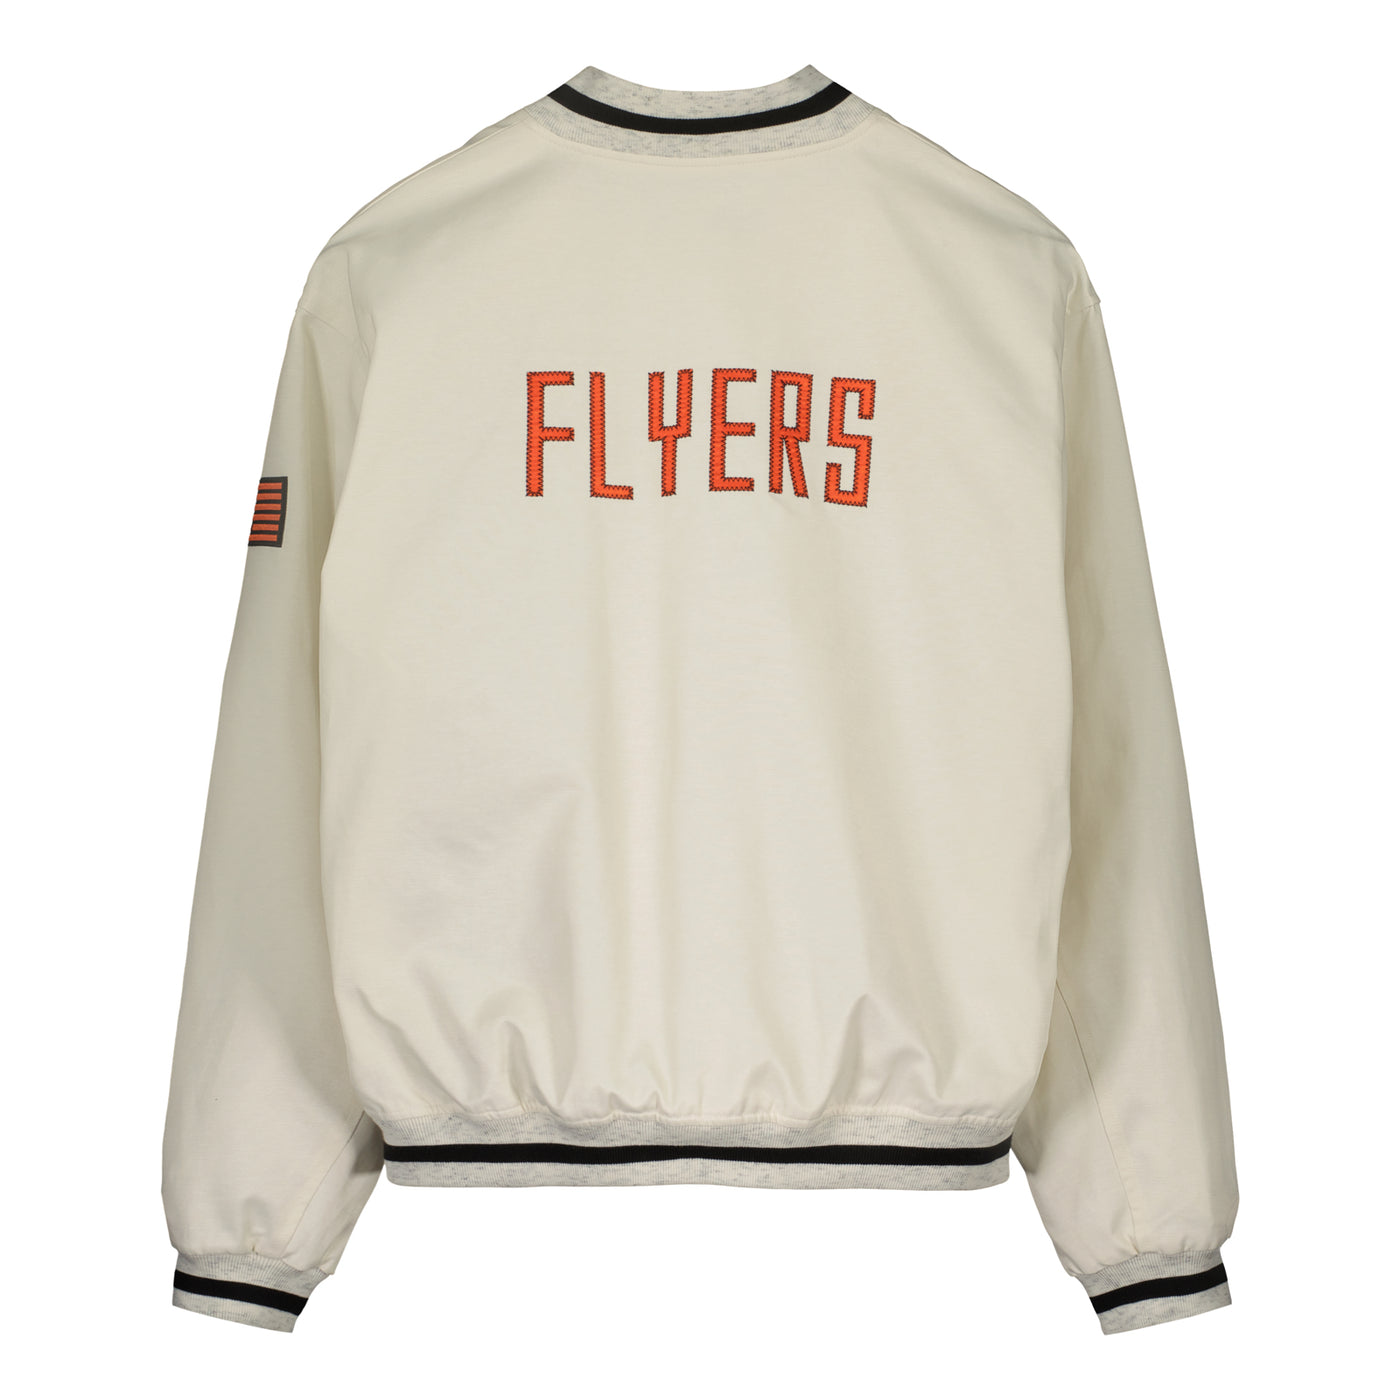 Flyers team jacket